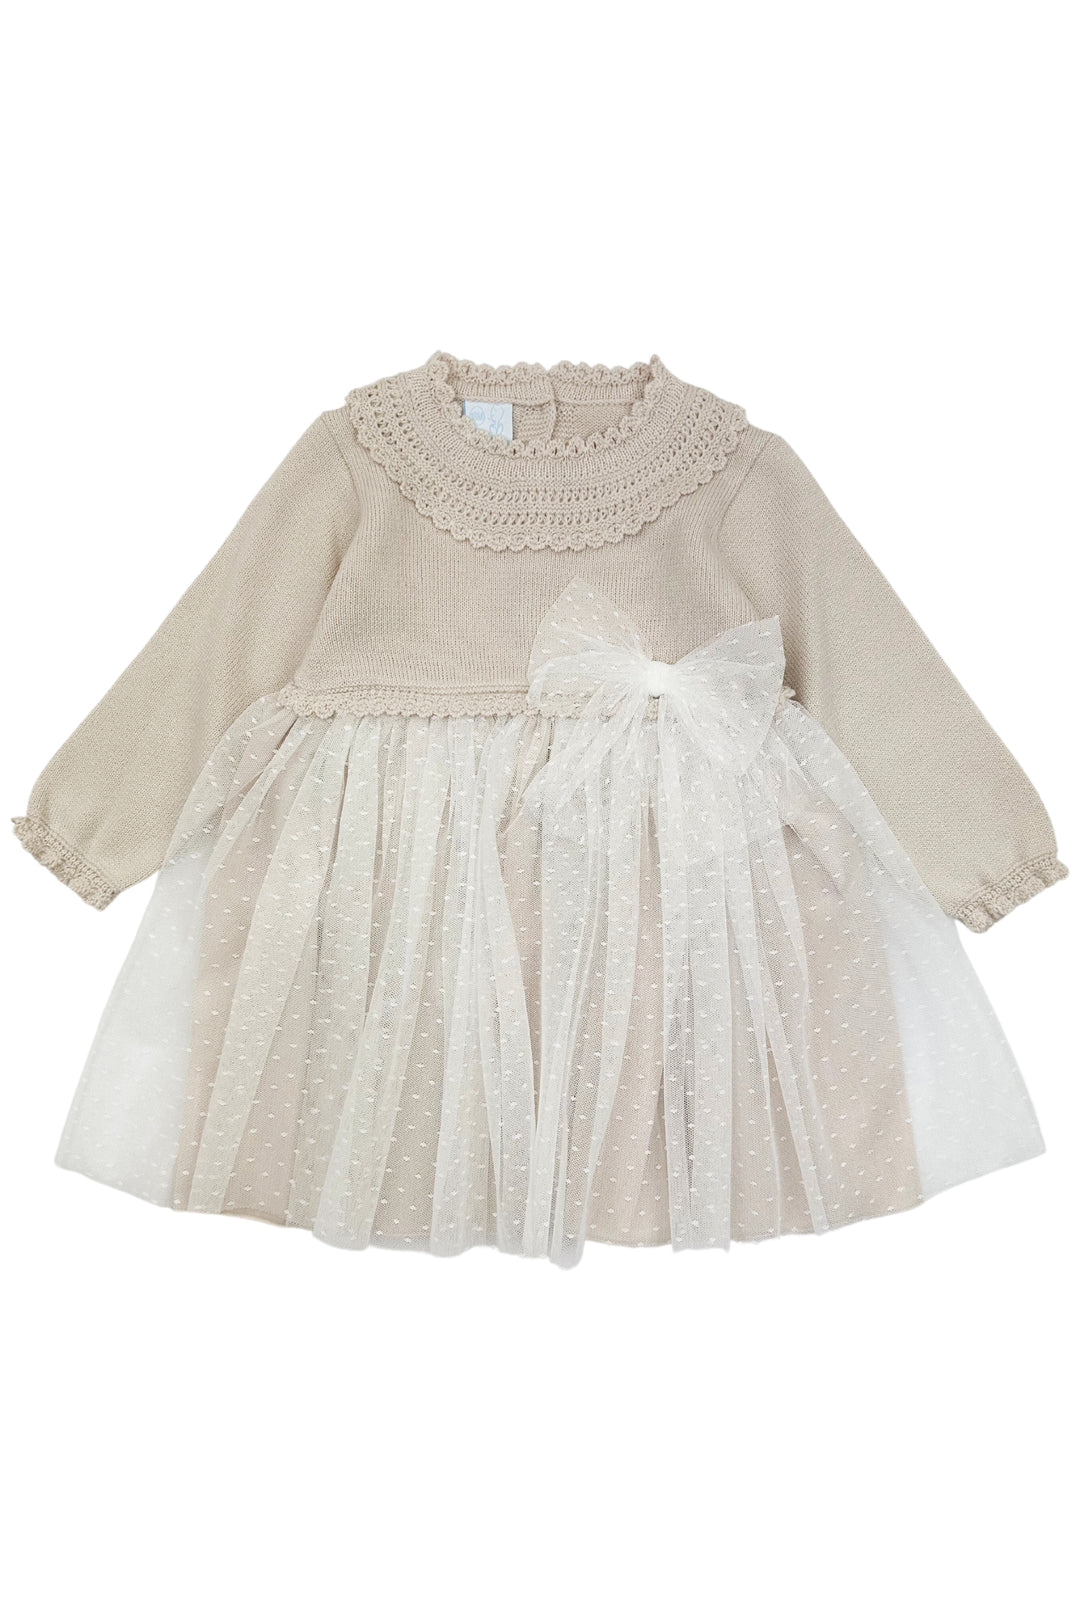 Granlei "Honey" Stone Shimmer Knit Tulle Dress | Millie and John